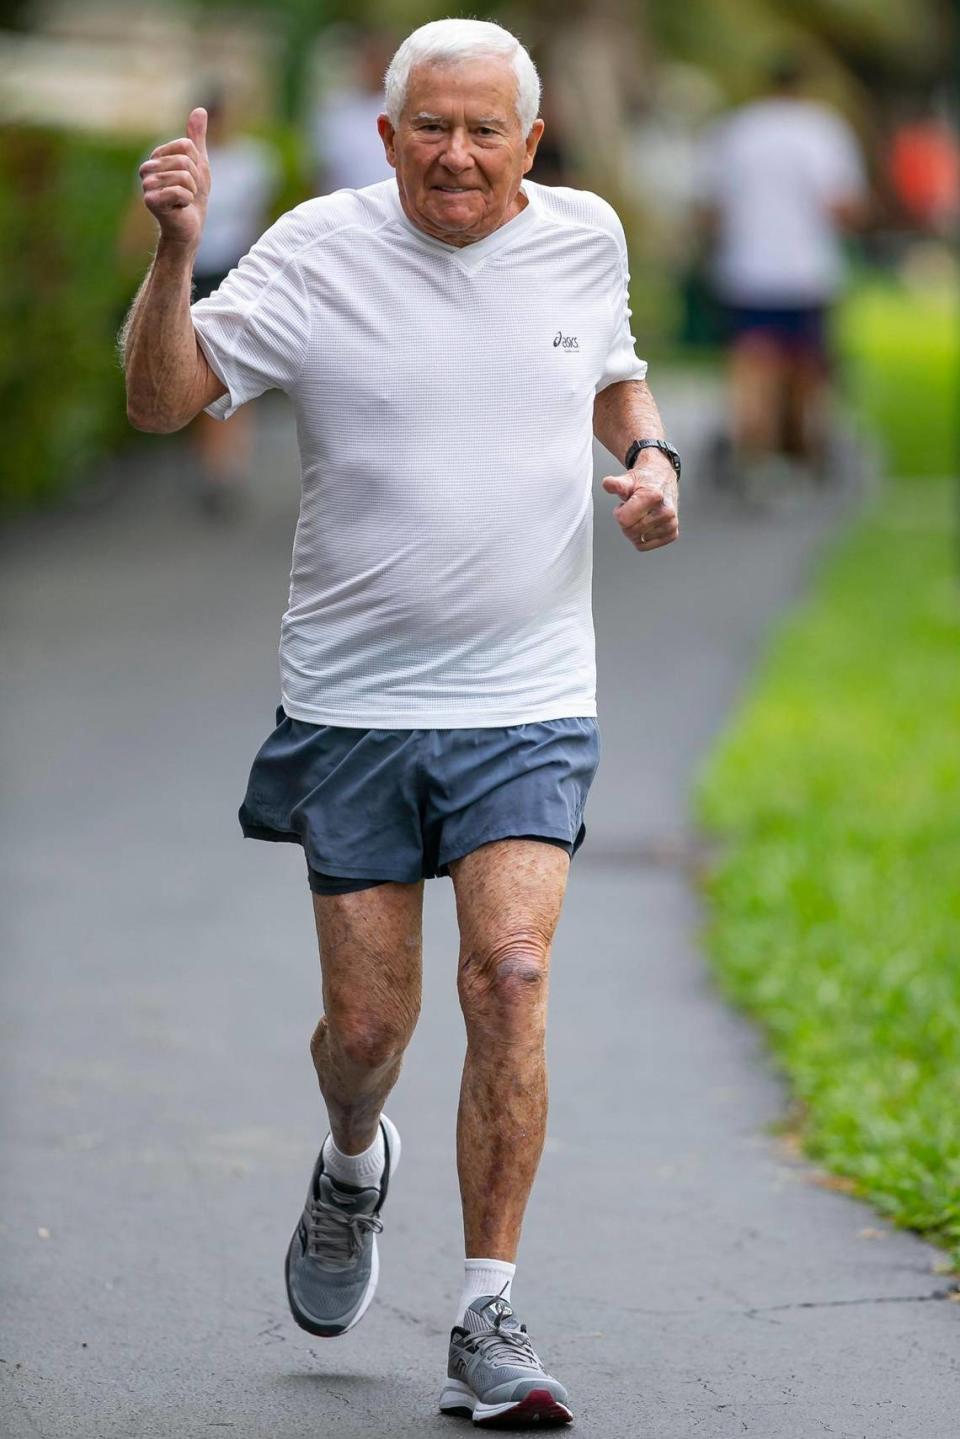 Lewis Ress, de 91 años, trota en el Don Soffer Exercise Trail en Aventura, Florida, el sábado 22 de enero de 2022. Ress, un antiguo abogado litigante que sigue trabajando y participando en la comunidad del sur de la Florida, competirá en la parte de medio maratón del Miami Marathon el 6 de febrero de 2022.